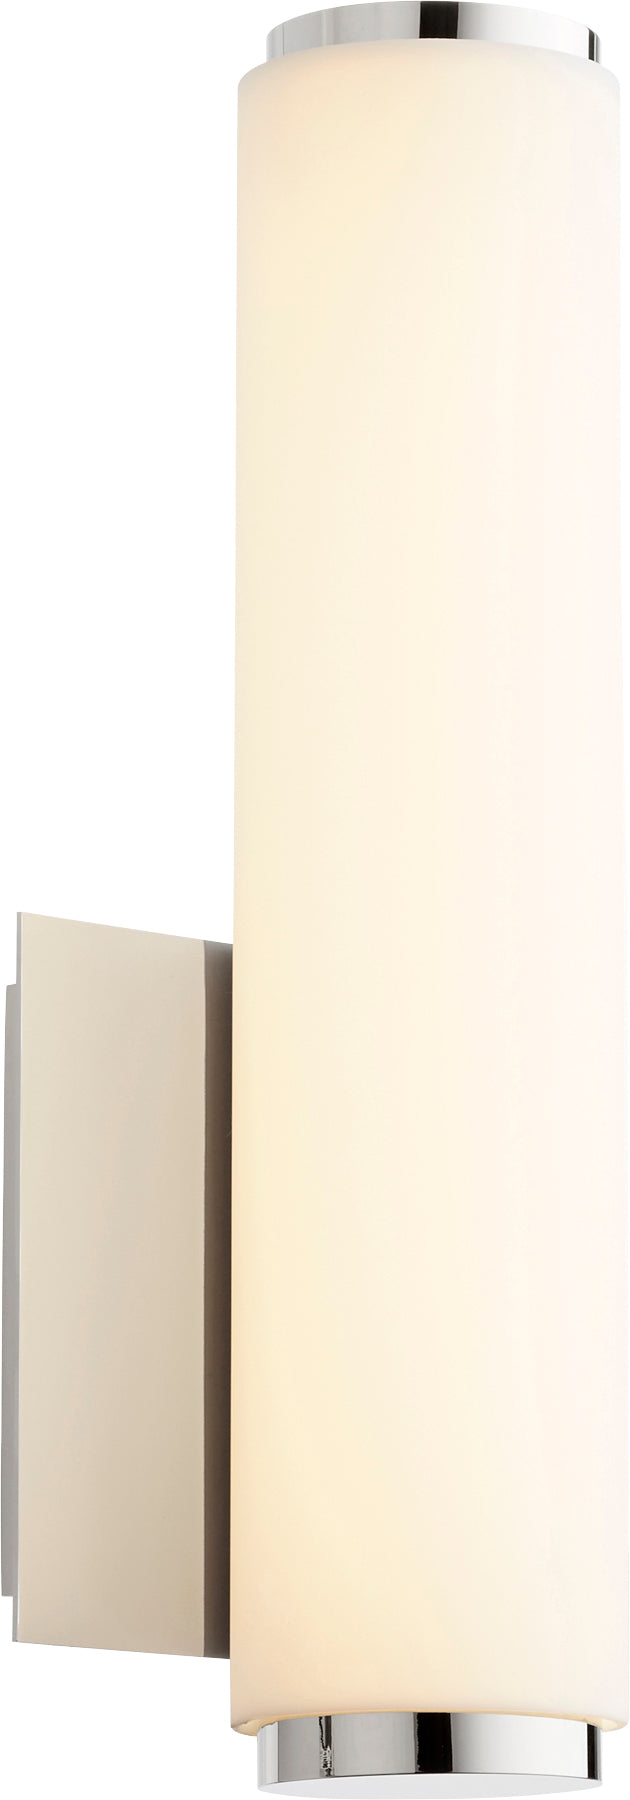 Aplique de pared LED de acrílico blanco mate de níquel pulido moderno y contemporáneo de 1 luz